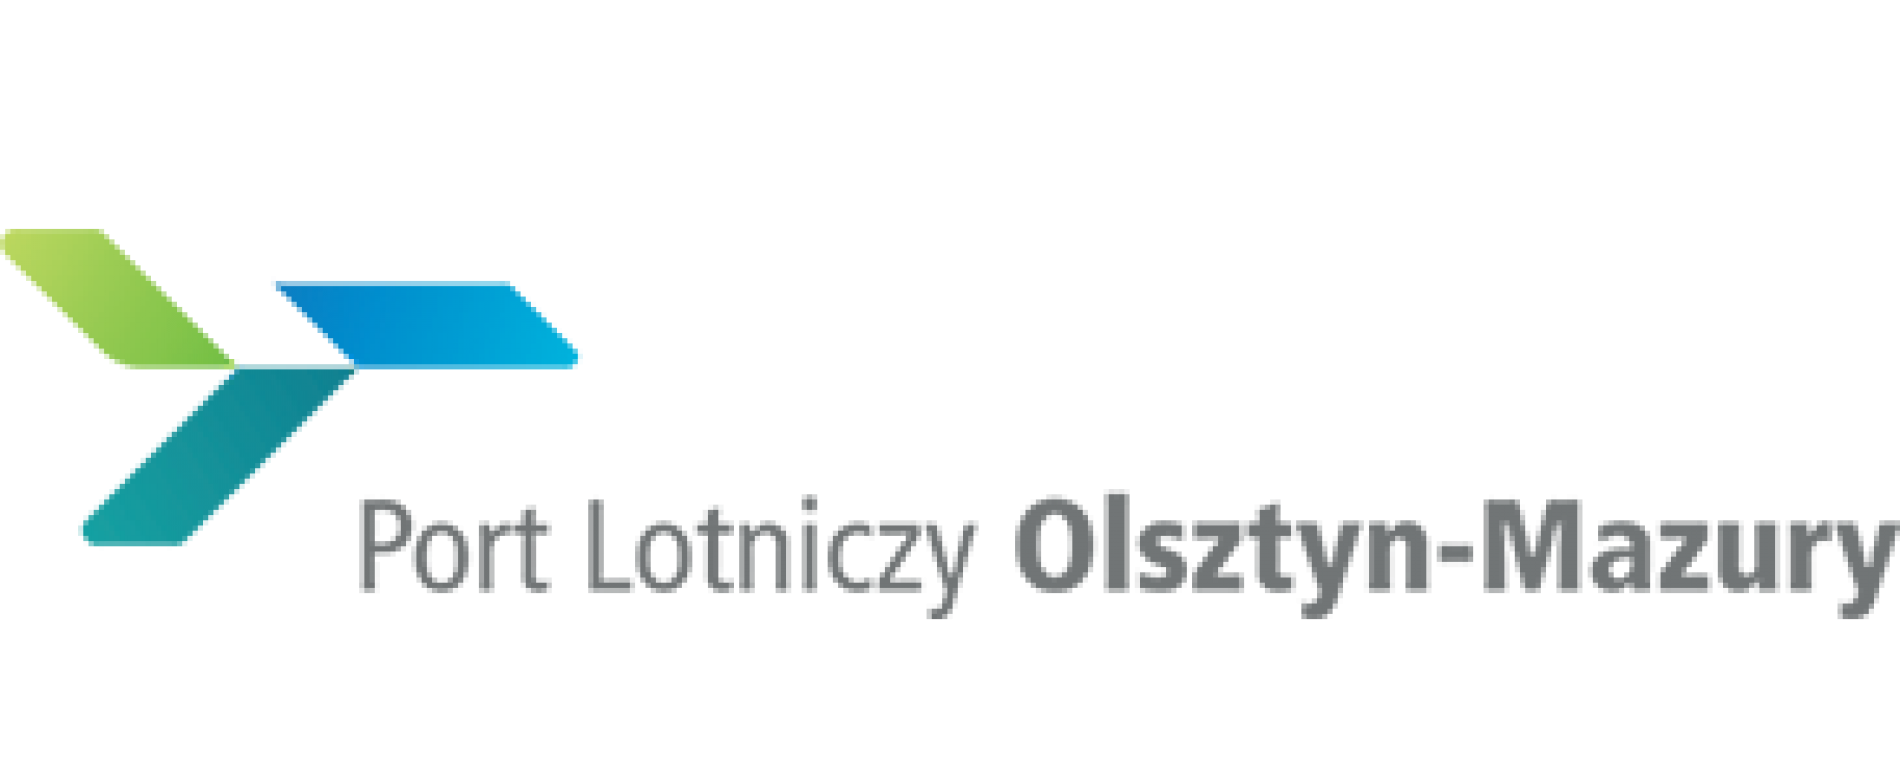 Port lotniczy Olsztyn-Mazury będzie mógł świadczyć usługi meteo